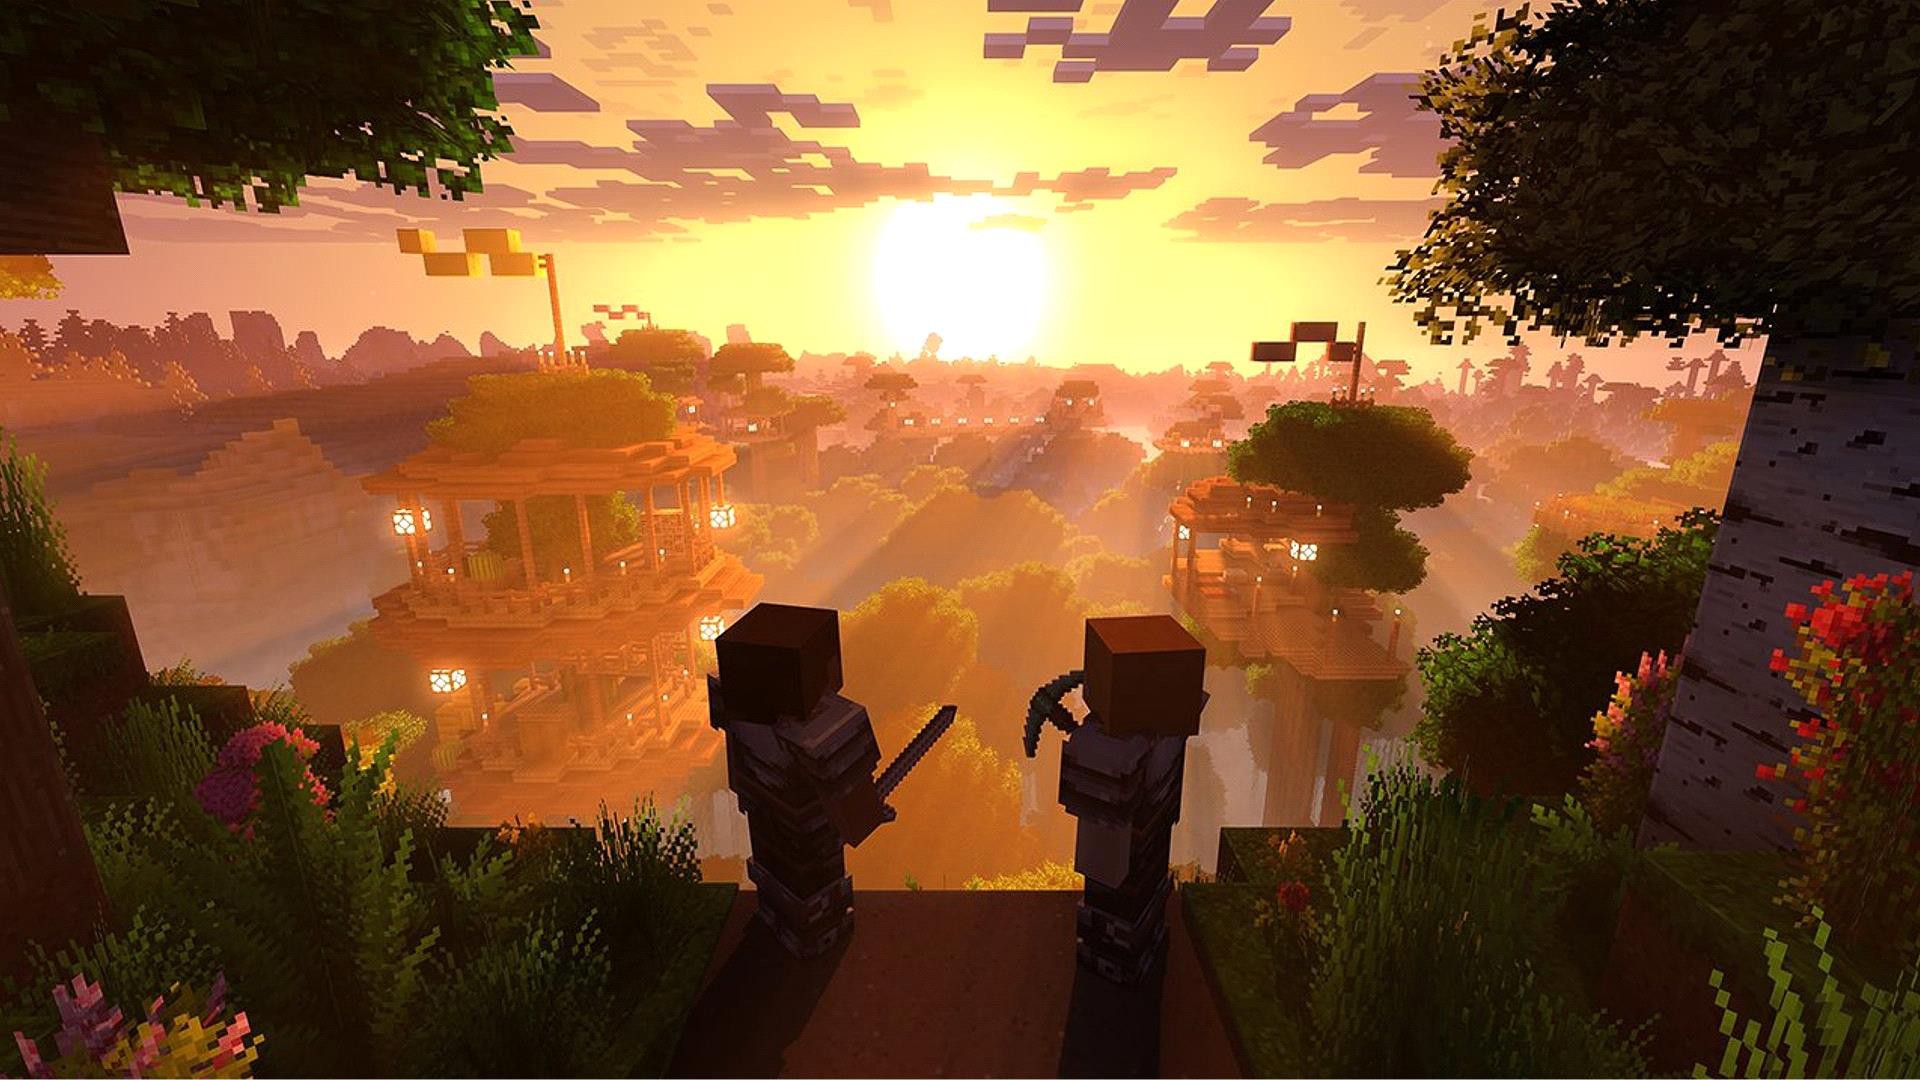 Minecraft đồ họa siêu đỉnh: Bạn đã từng thử trải nghiệm Minecraft với đồ họa cực kỳ nổi bật và sắc nét chưa? Với phiên bản Minecraft đồ họa siêu đỉnh, bạn sẽ được thỏa sức khám phá thế giới game đầy ấn tượng, sống động như chưa từng có.